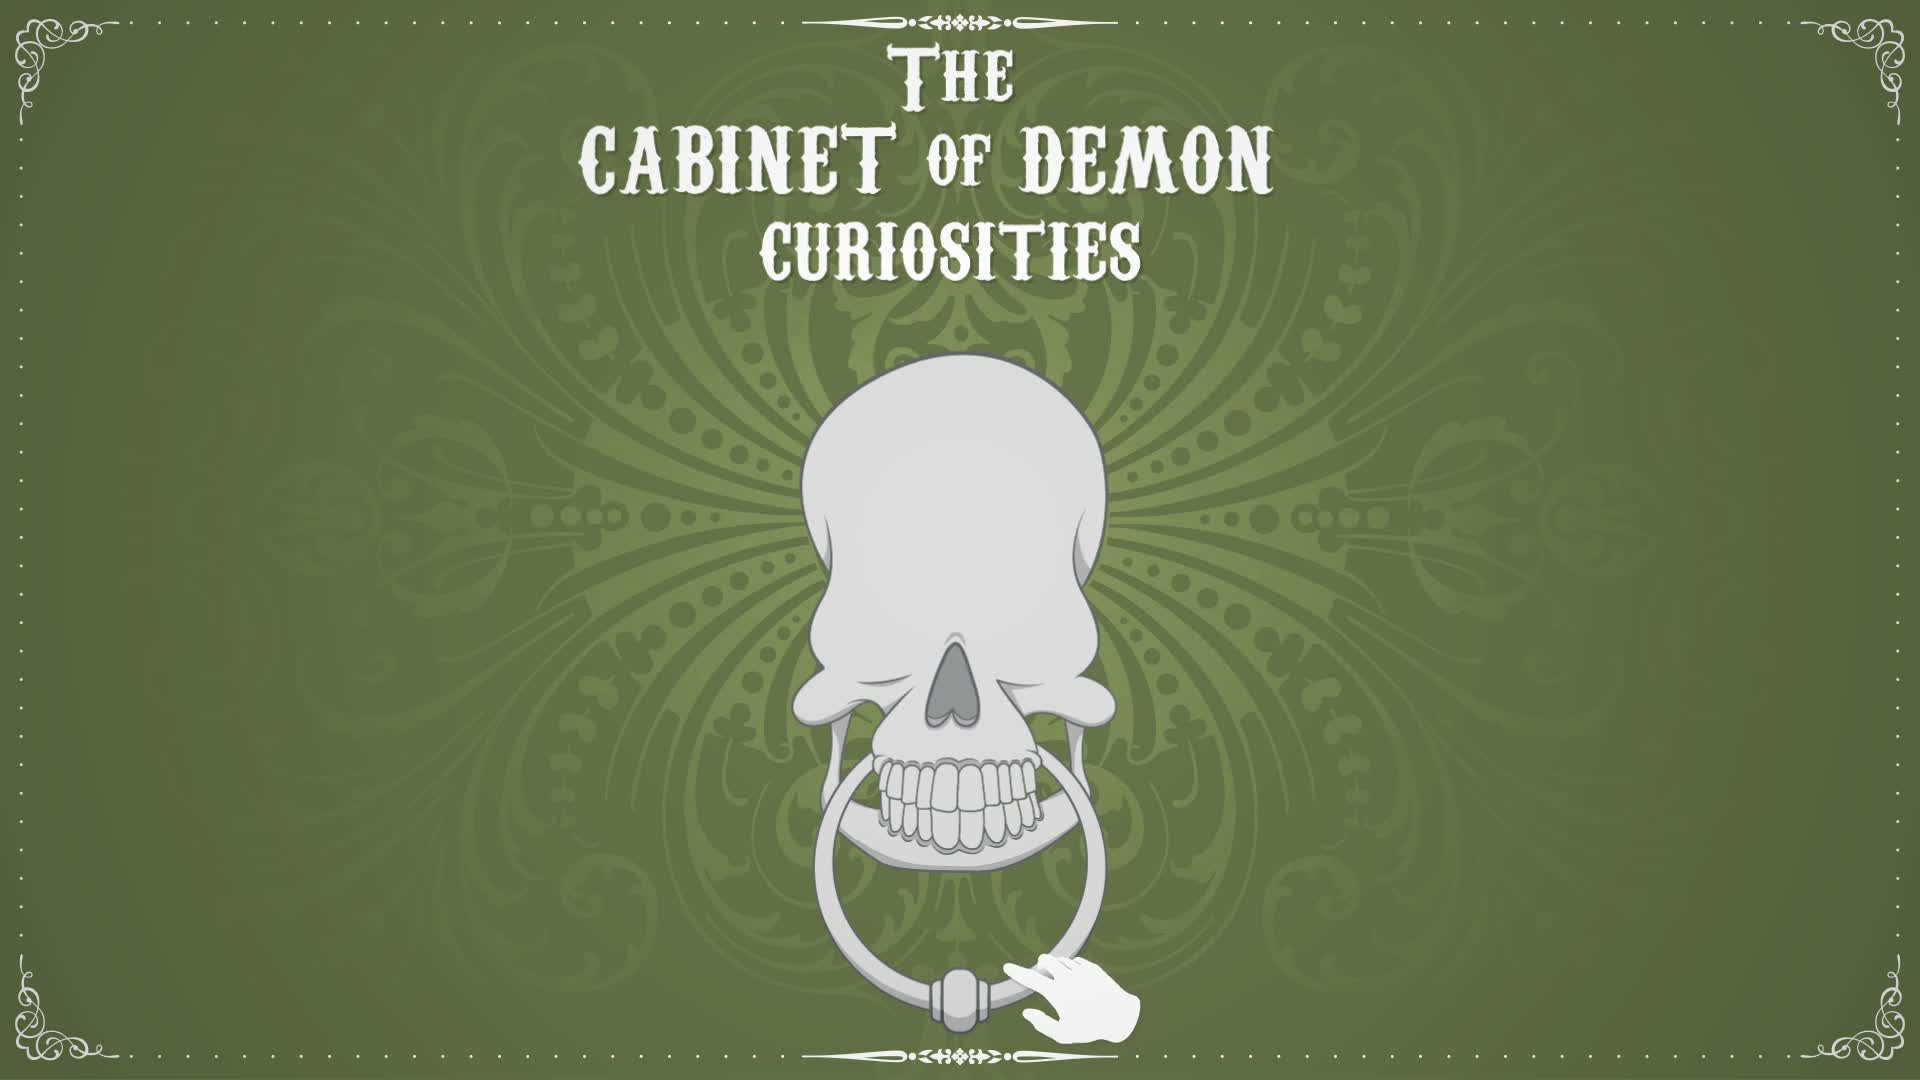 The Cabinet of Demon Curiosities